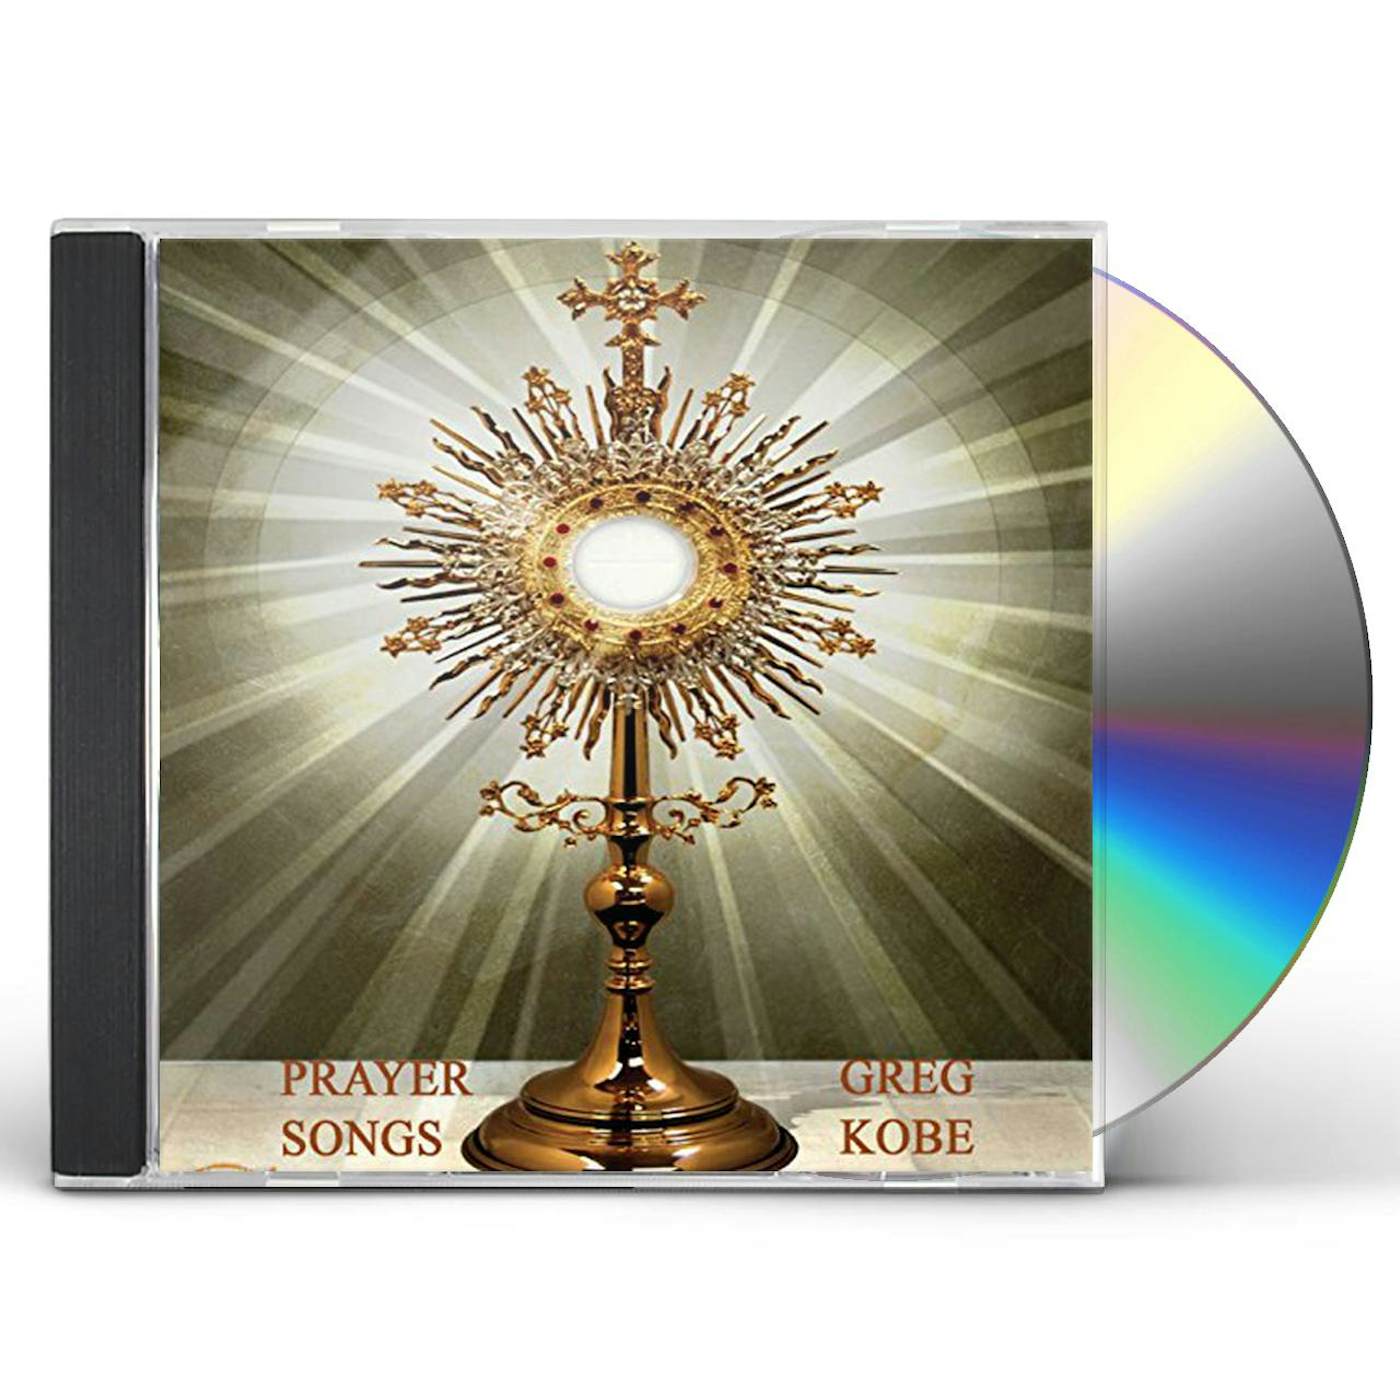 Greg Kobe PRAYER SONGS CD